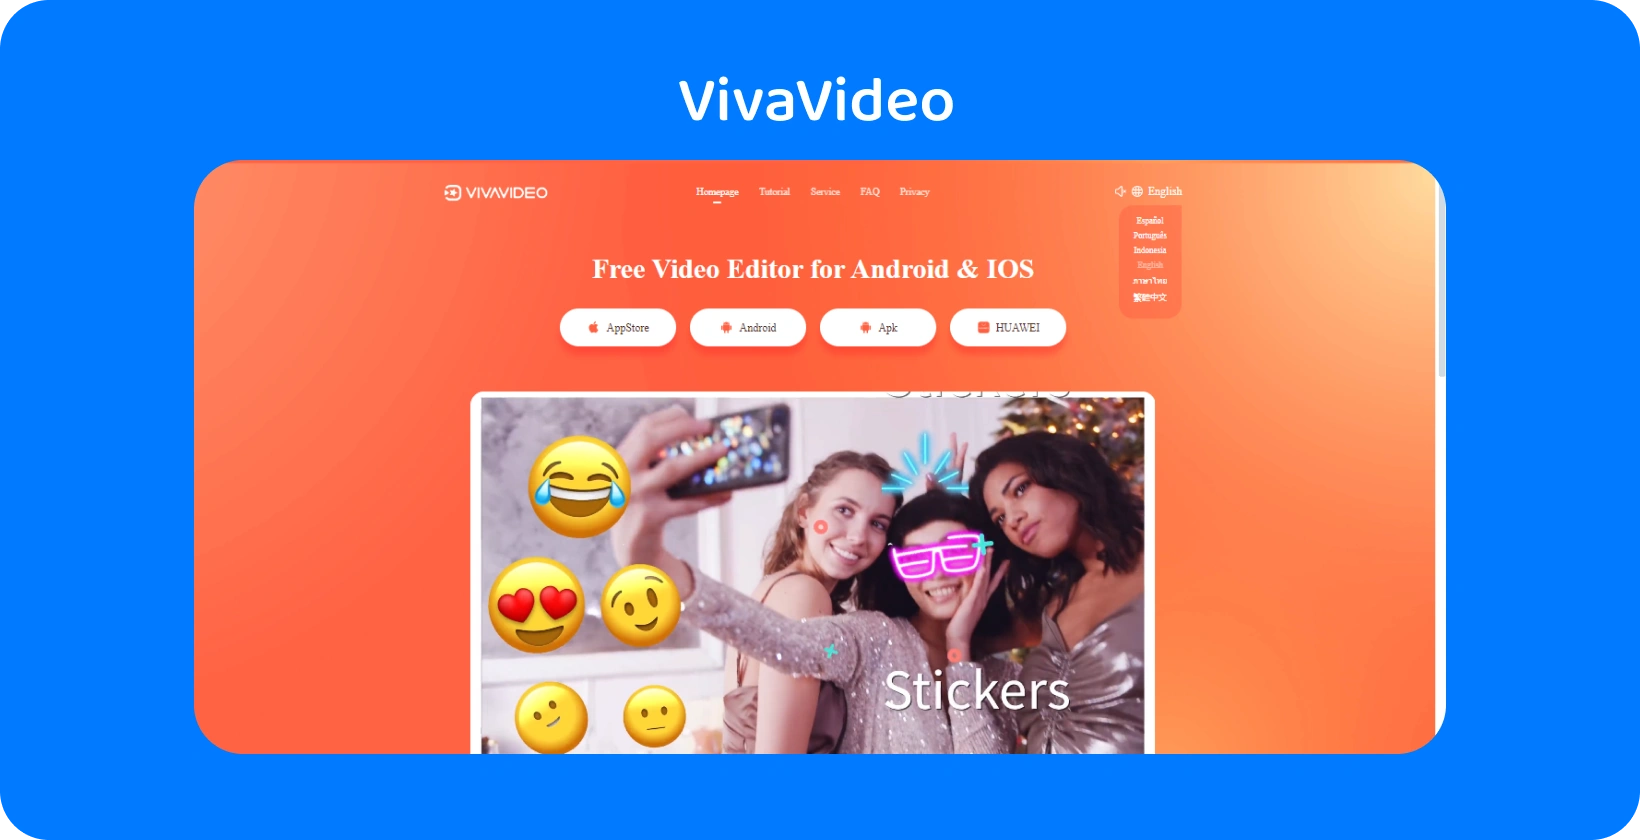 VivaVideo صفحة التطبيق بخلفية برتقالية نابضة بالحياة ، تعرض ميزات الملصقات لتحسين مقاطع الفيديو على Android و iOS.
